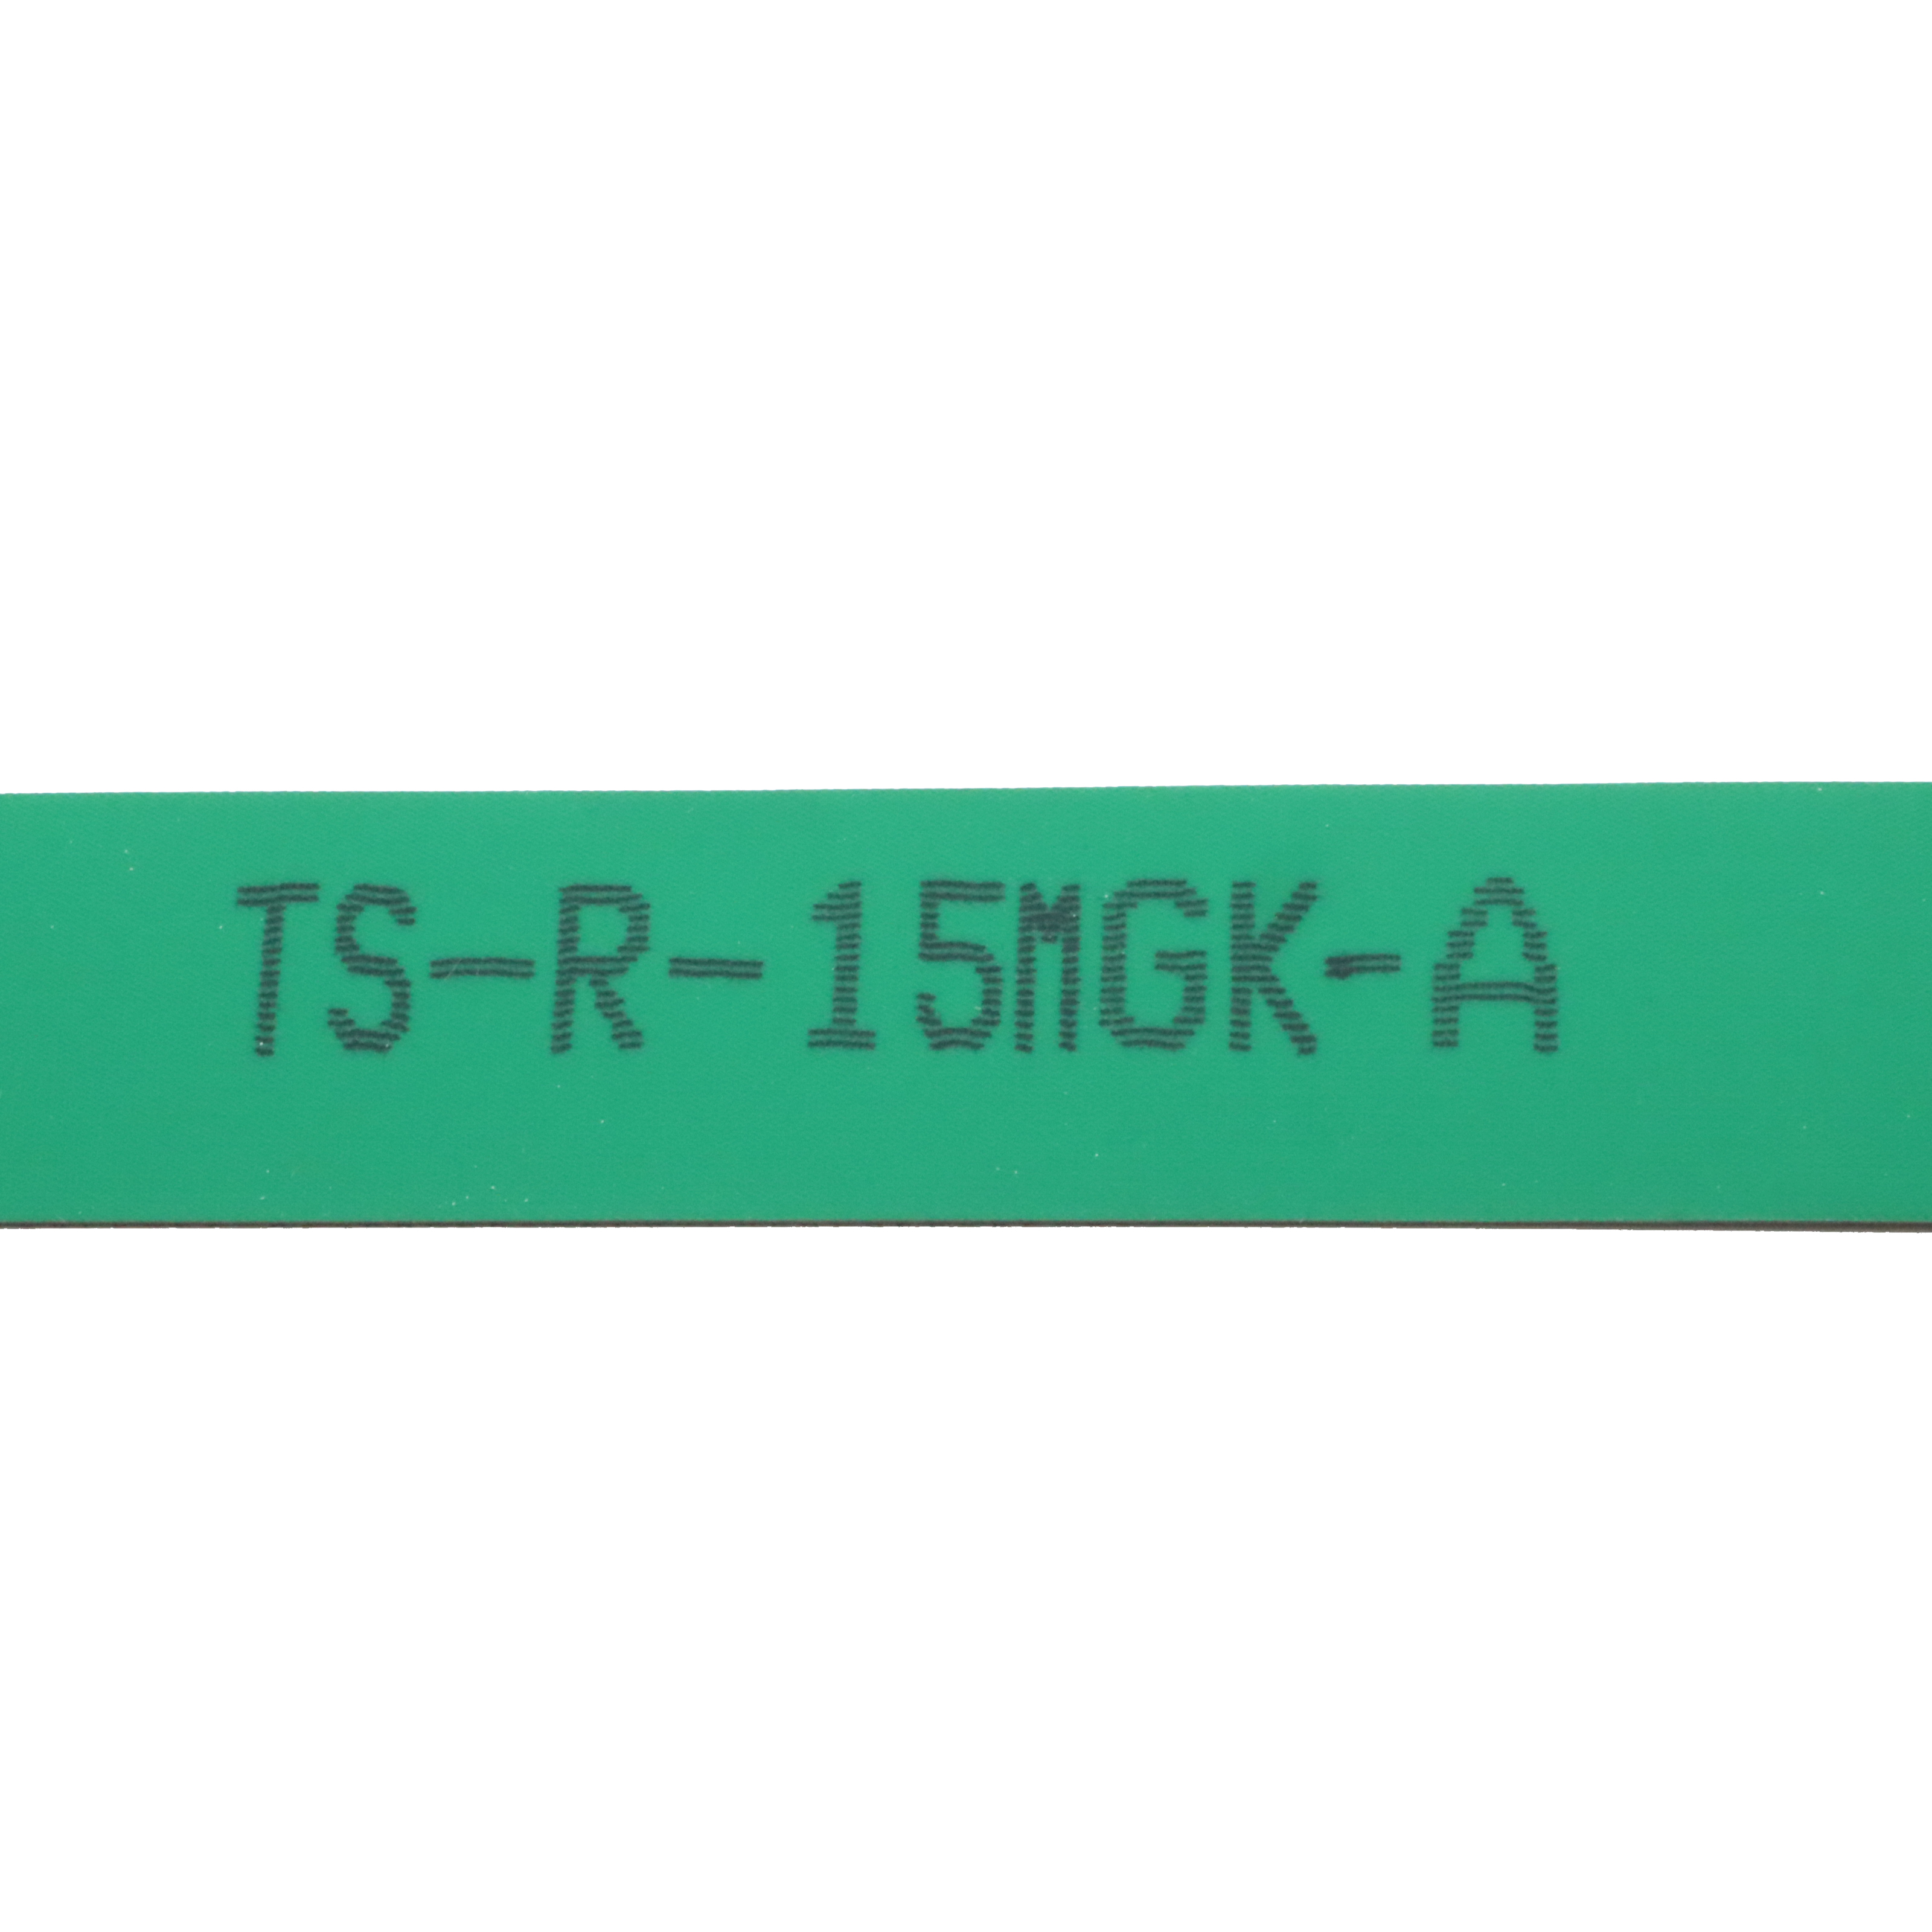 TS-R-15MGK-A